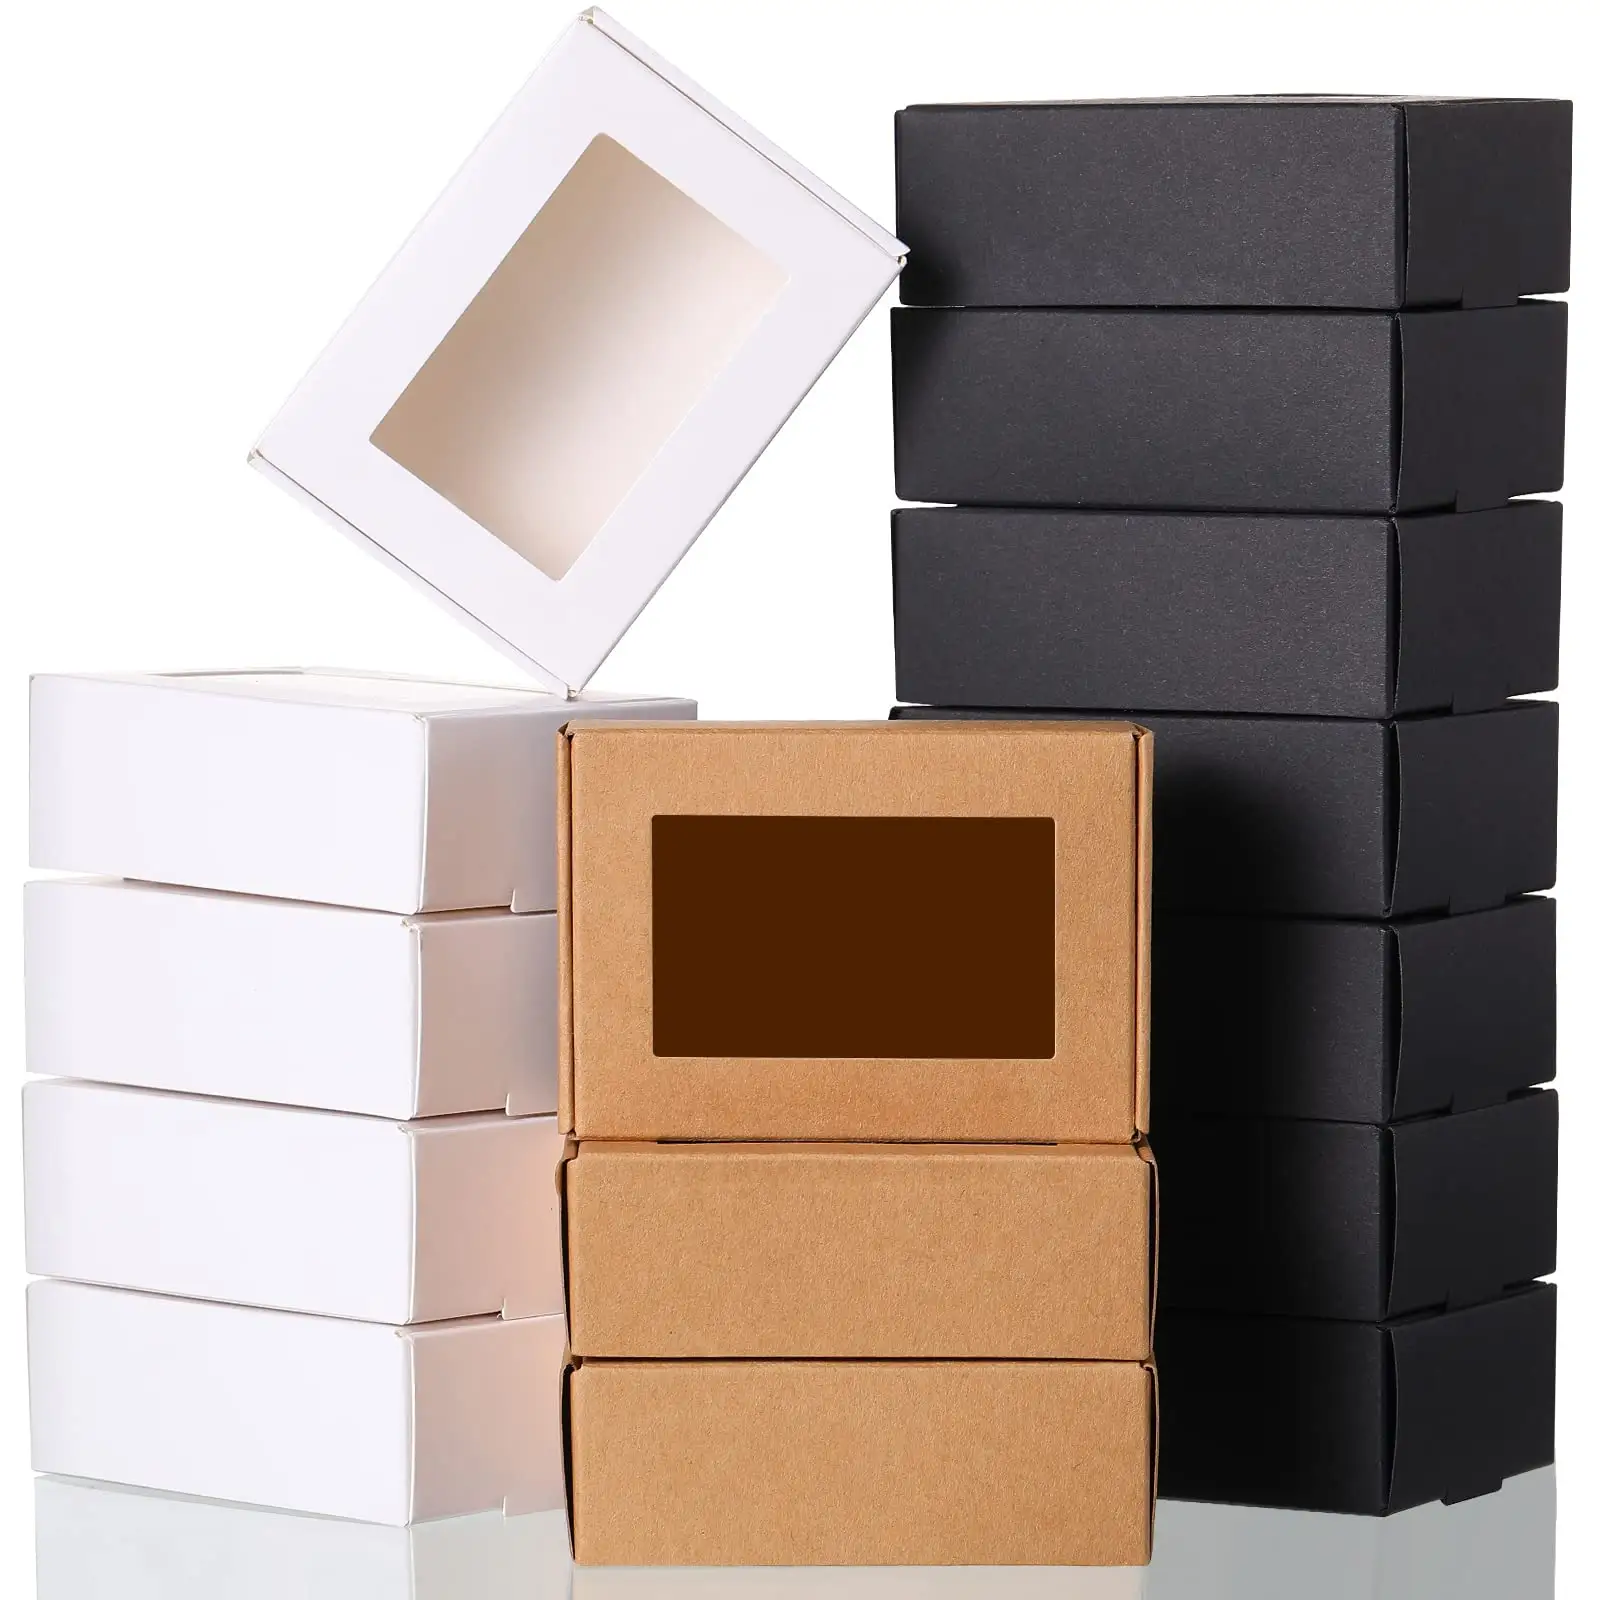 Mini coffrets cadeaux en papier kraft blanc pliable de luxe avec emballage avec fenêtre fabriqués sur mesure à prix raisonnable pour petite entreprise actuelle